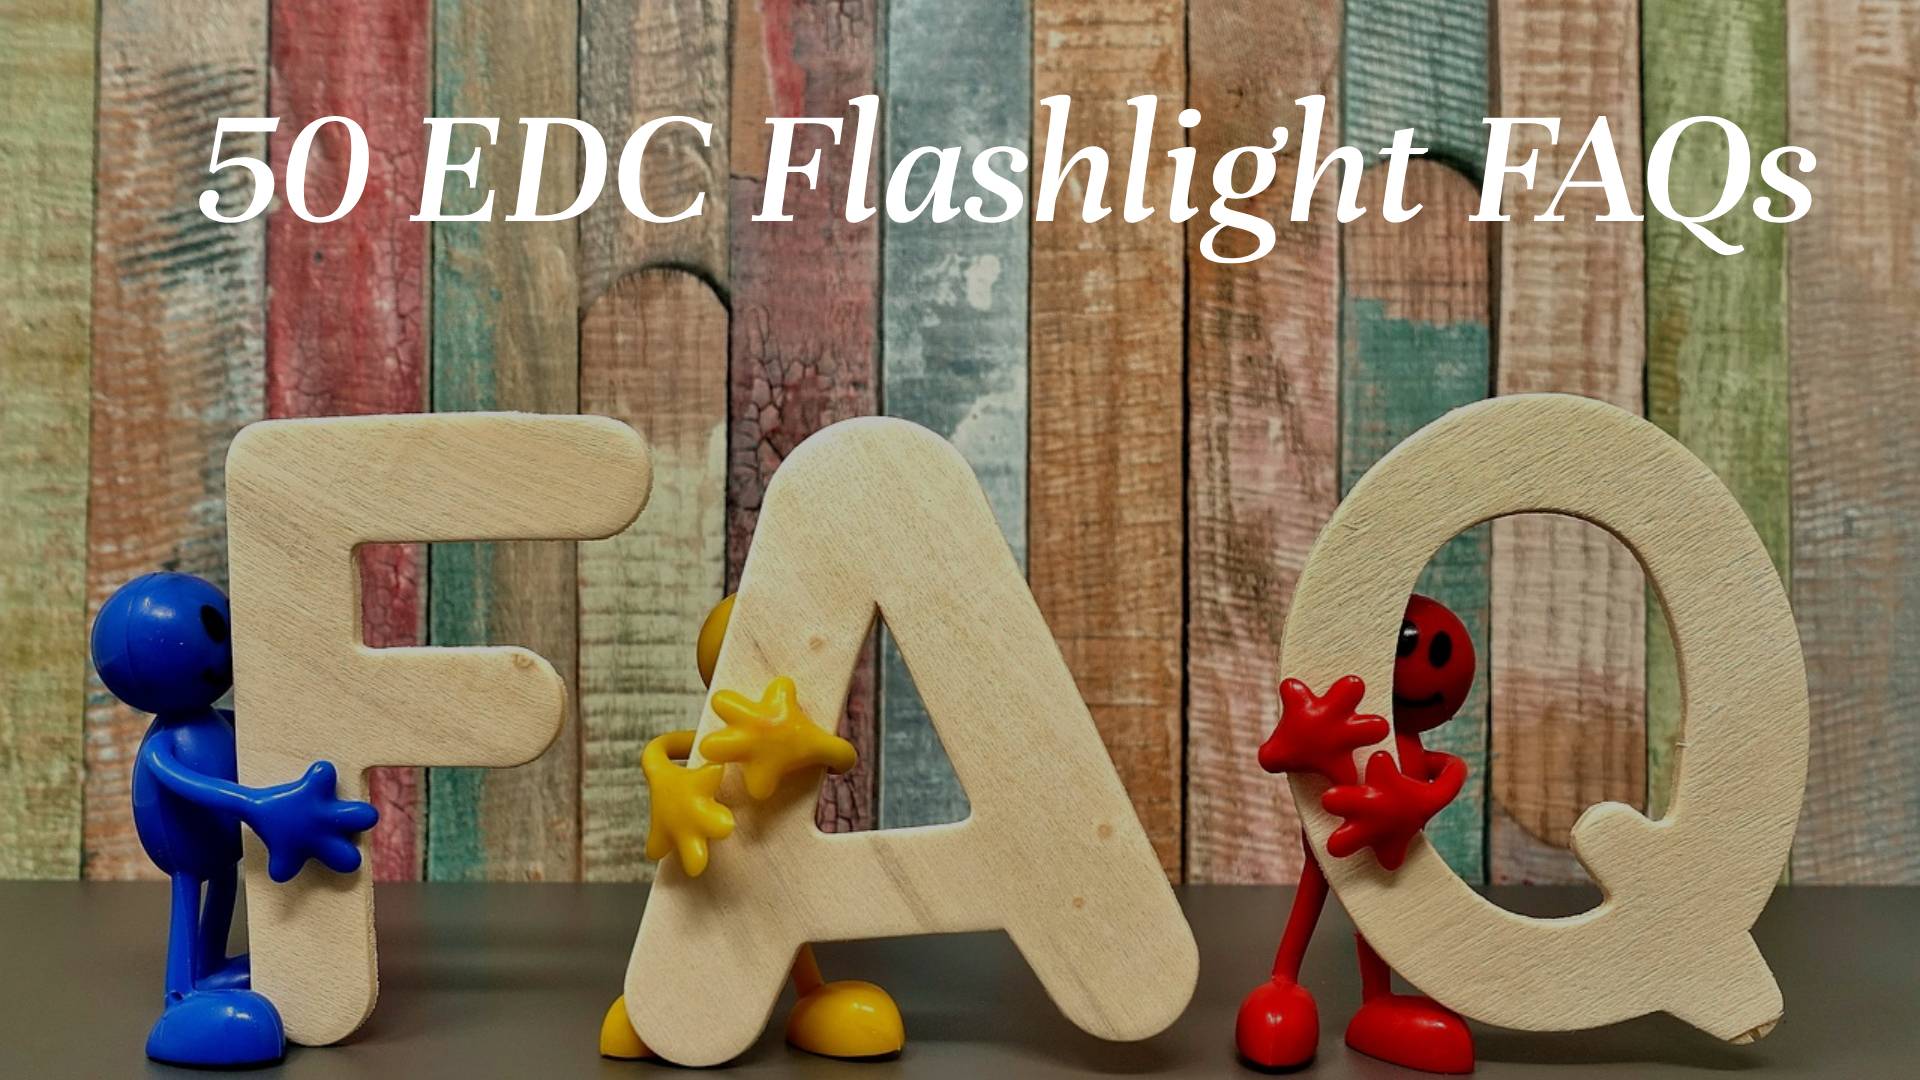 50-EDC-Flashlight-FAQs